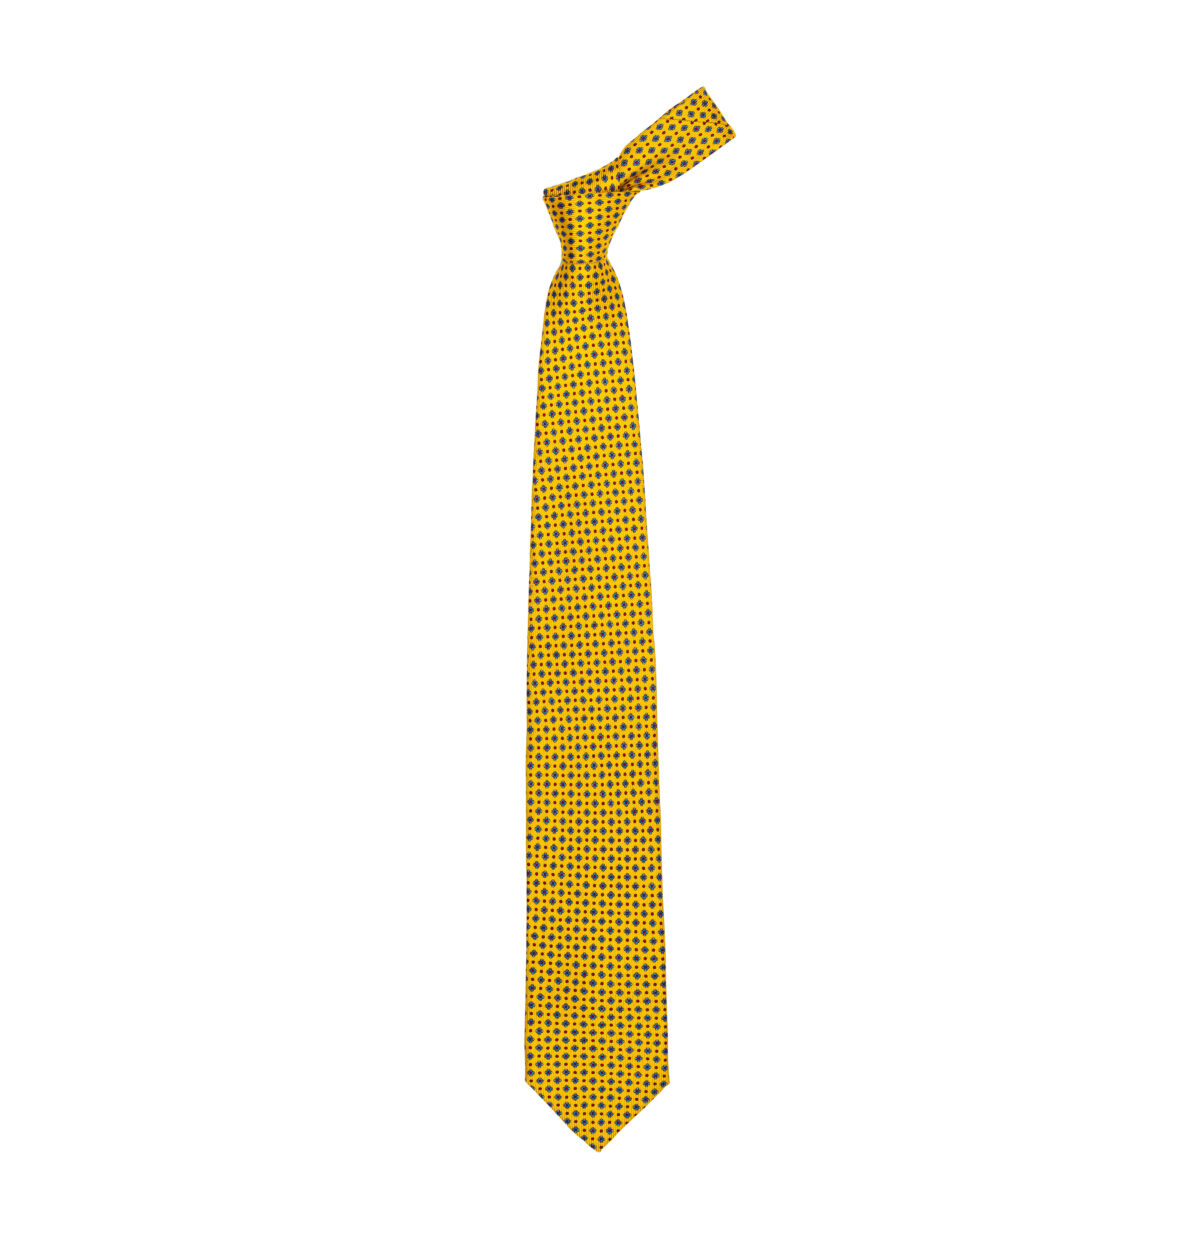 Cepparulo Sartoria Italiana Cravatta di seta 100% MADE IN ITALY